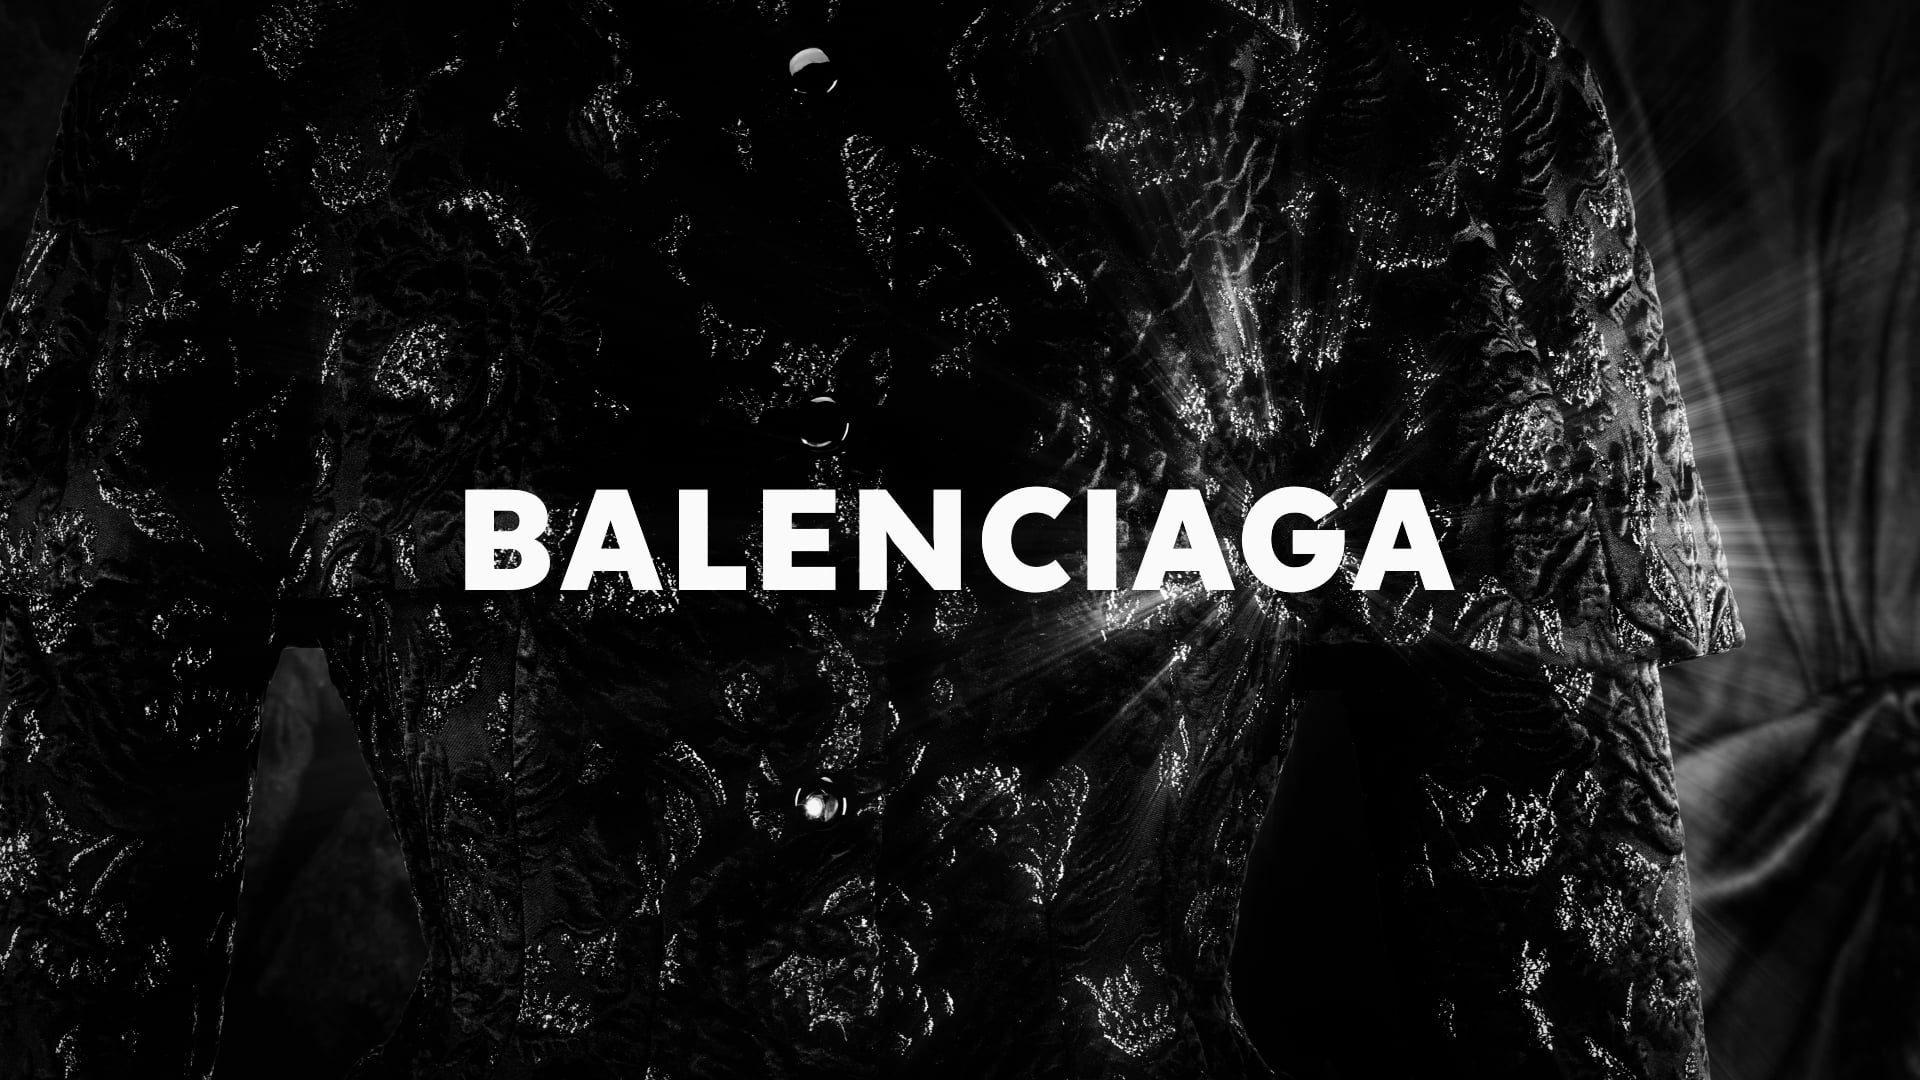 Balenciaga - on Vimeo